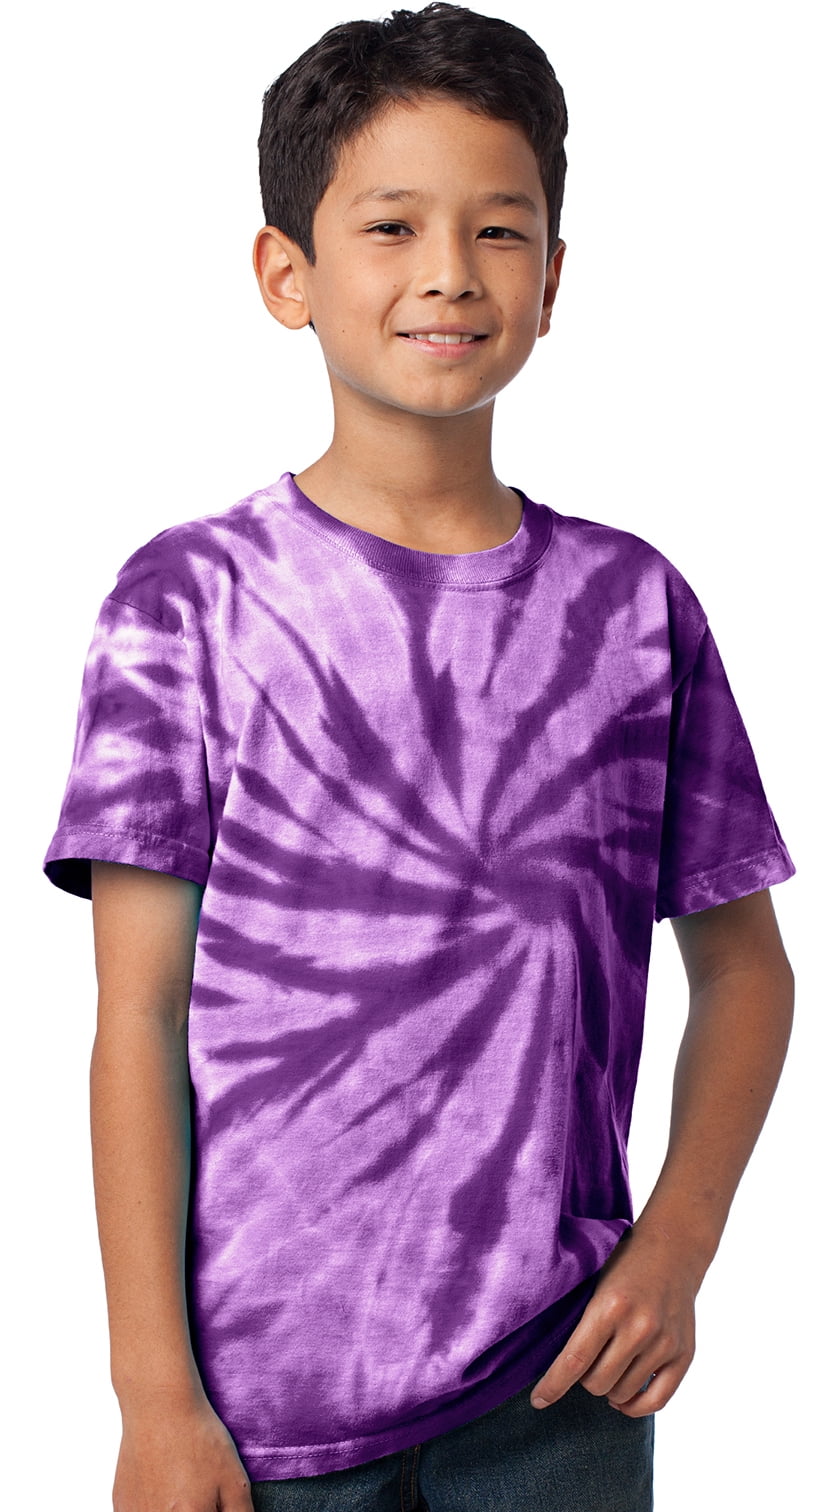 tie dye Toddler tie dye shirt 3t Tie Dye shirt tie dye smiley face festival apparel Tie Dye t-shirts psychedelic shirt kid gift